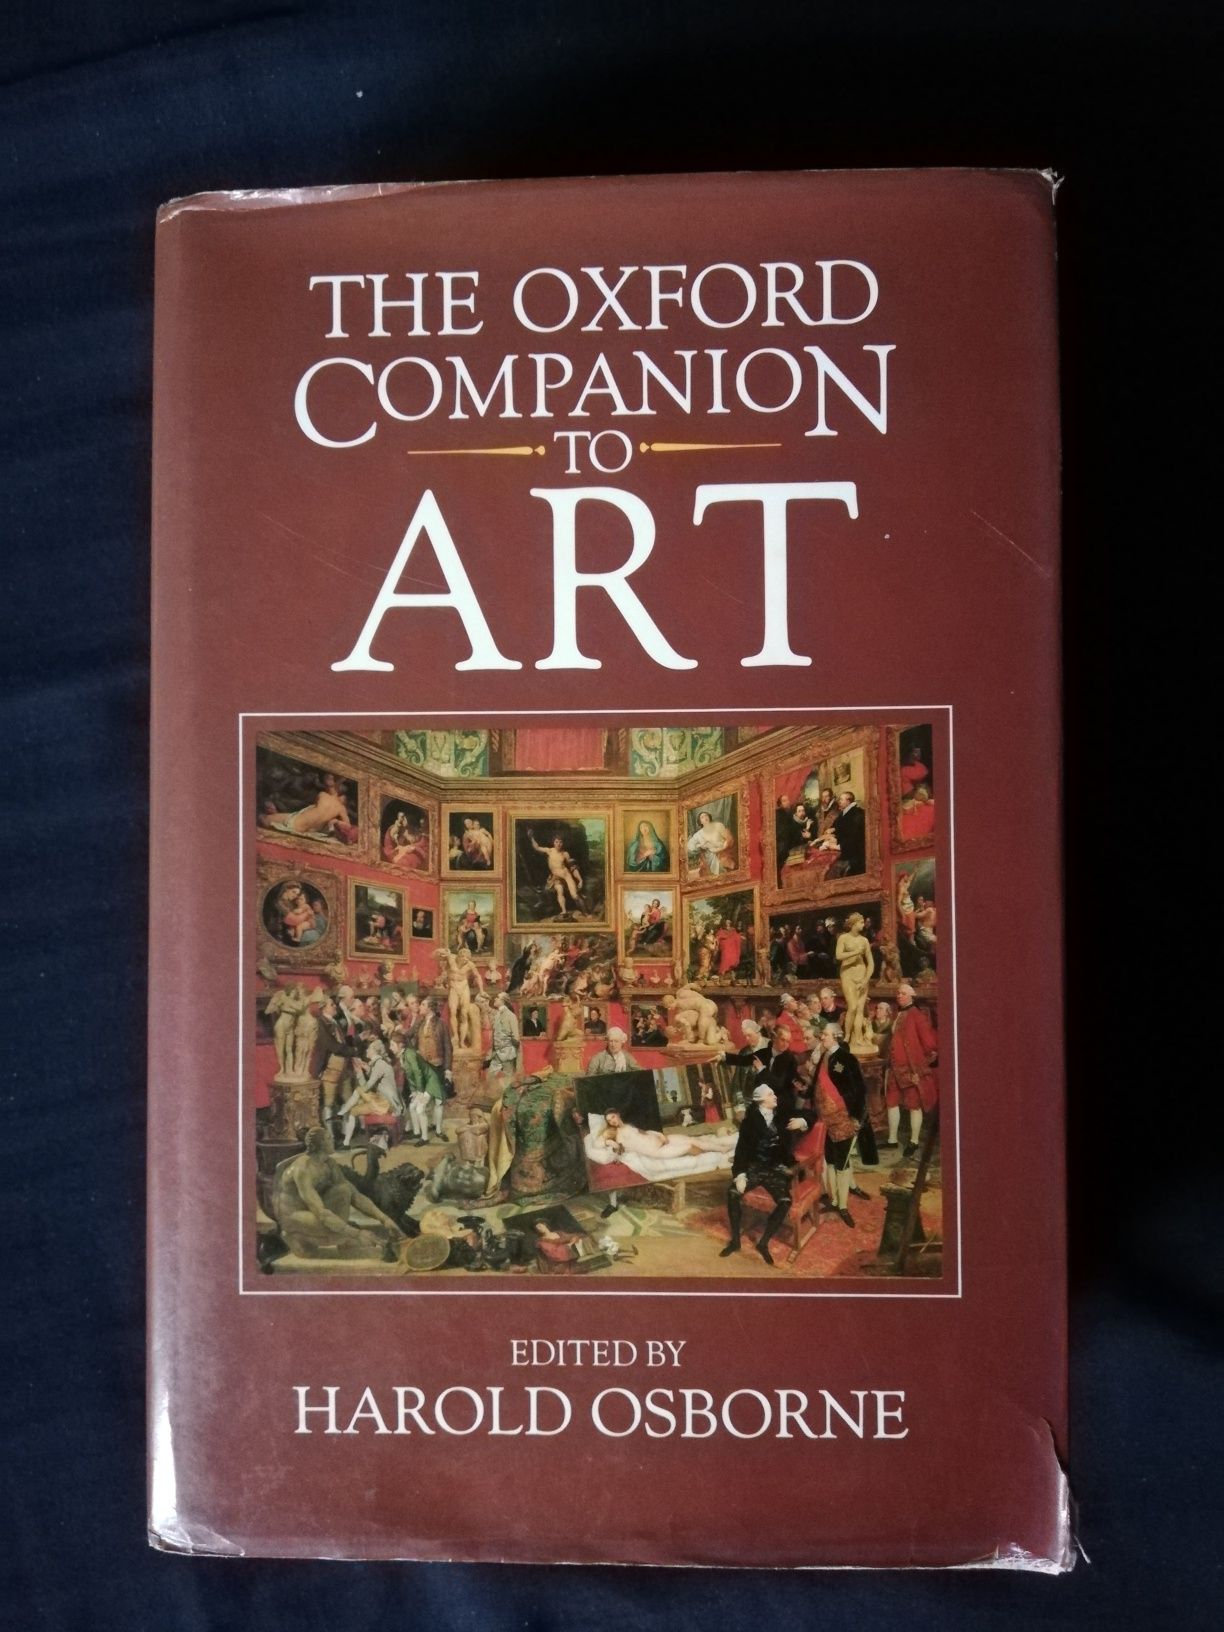 Livro "The Oxford Companion to Art" (portes grátis)